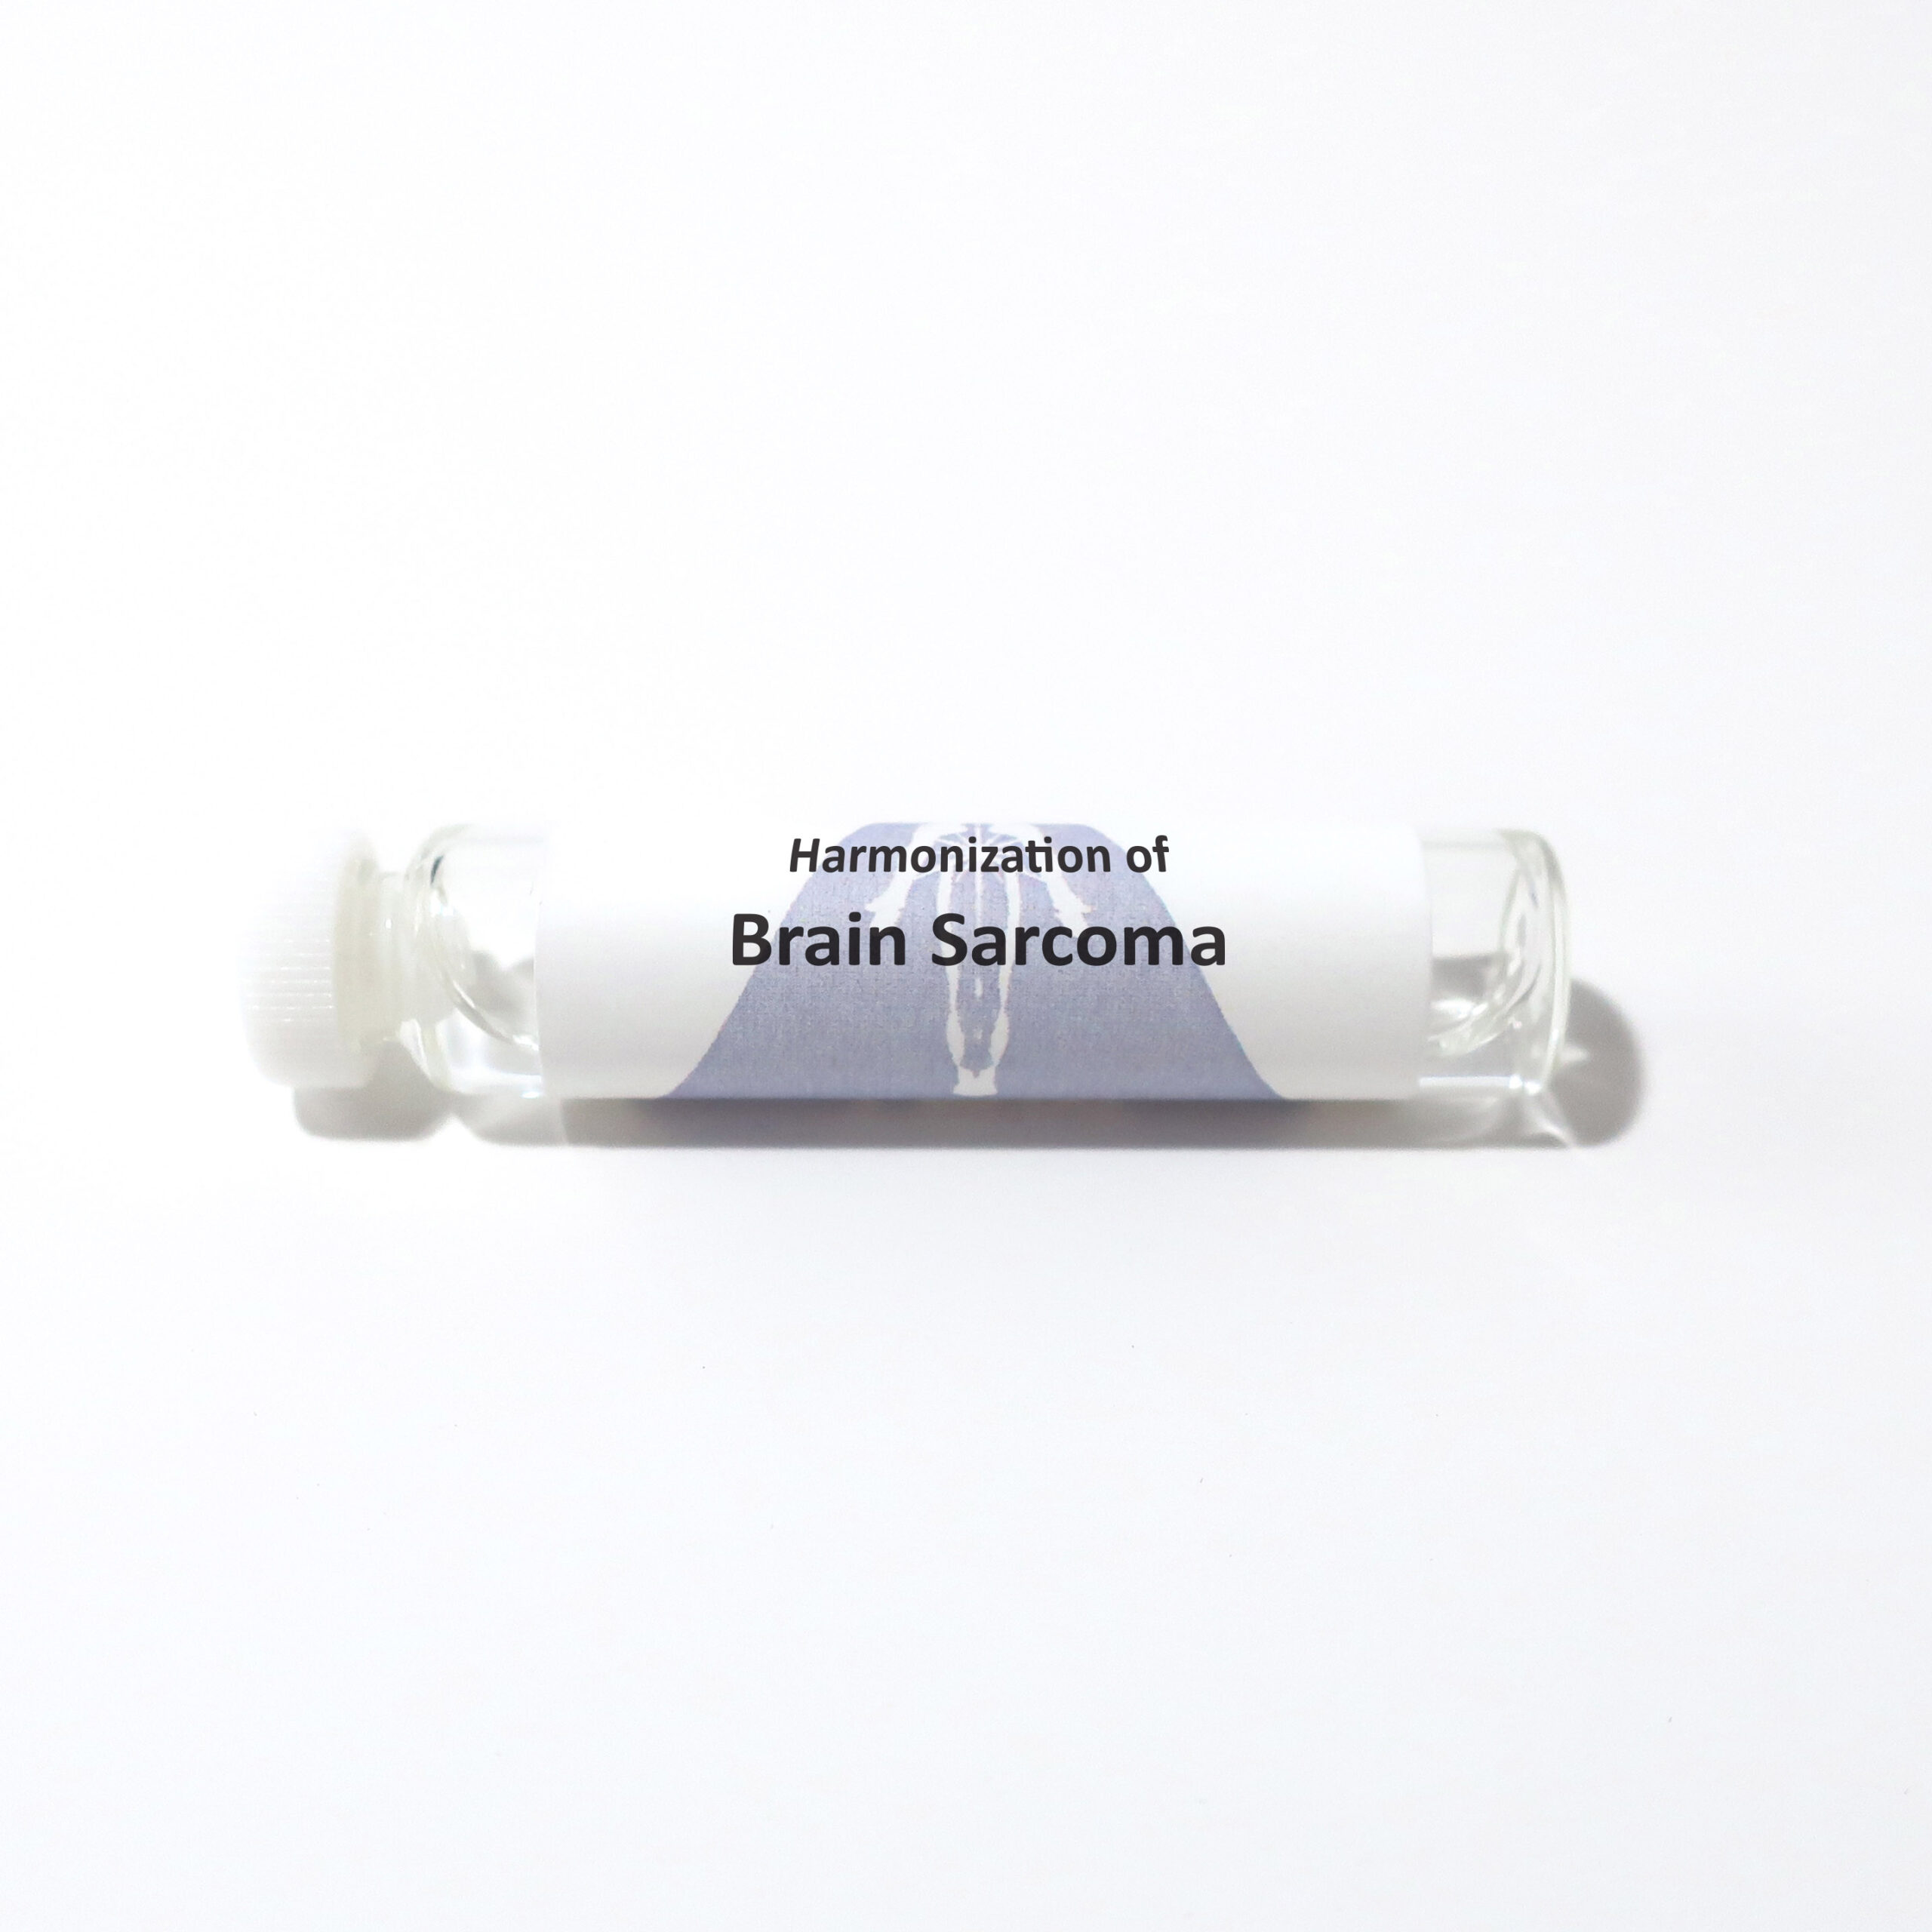 Brain Sarcoma